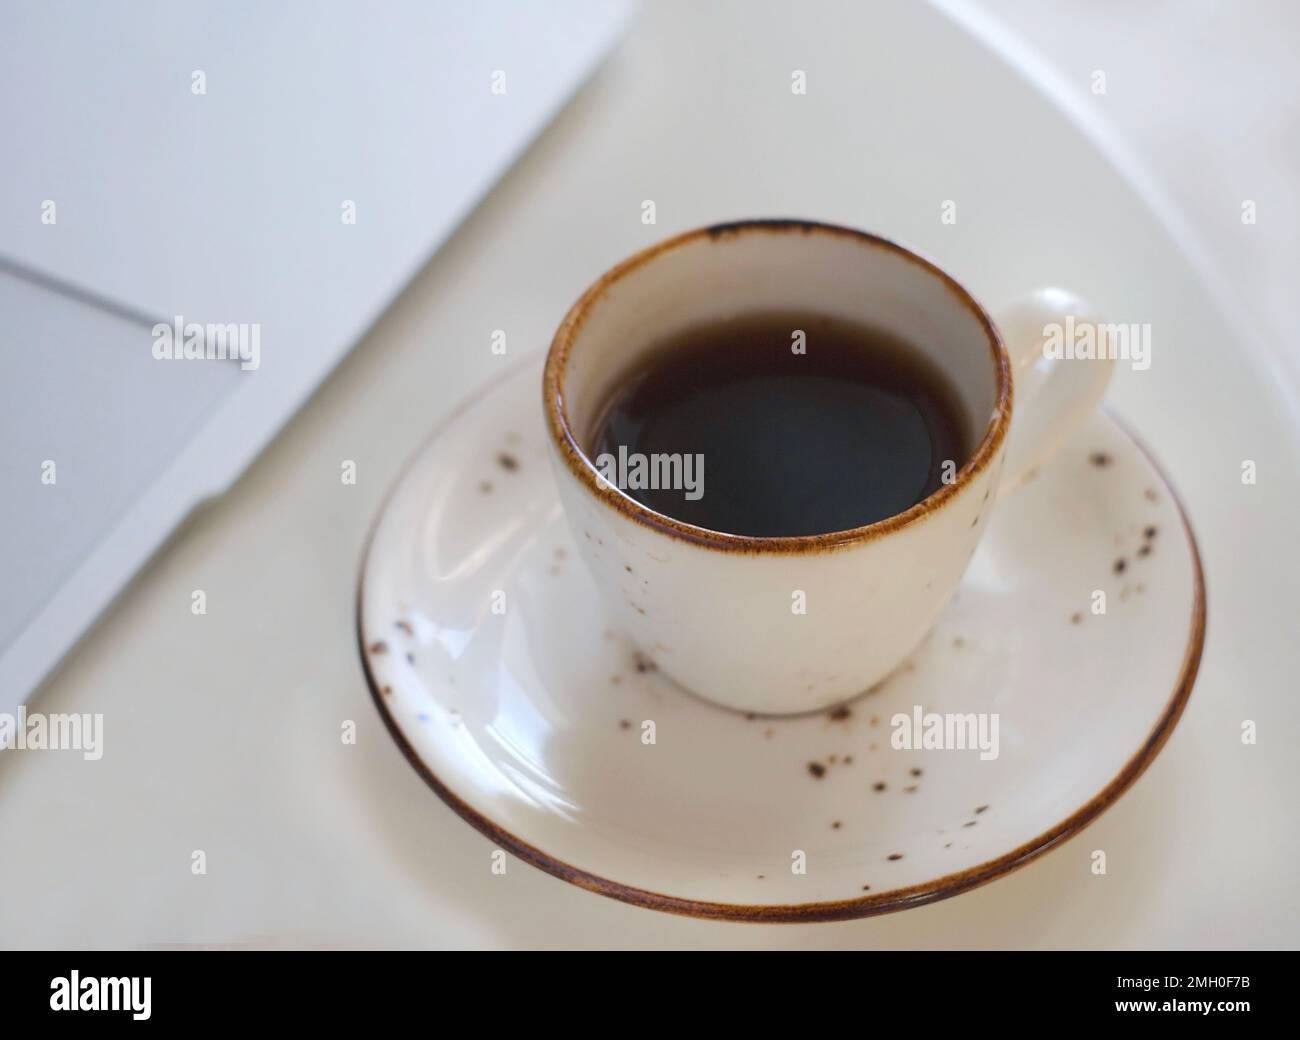 Une tasse de café noir parfumé est placée sur une table blanche. Derrière se trouve un ordinateur portable Banque D'Images